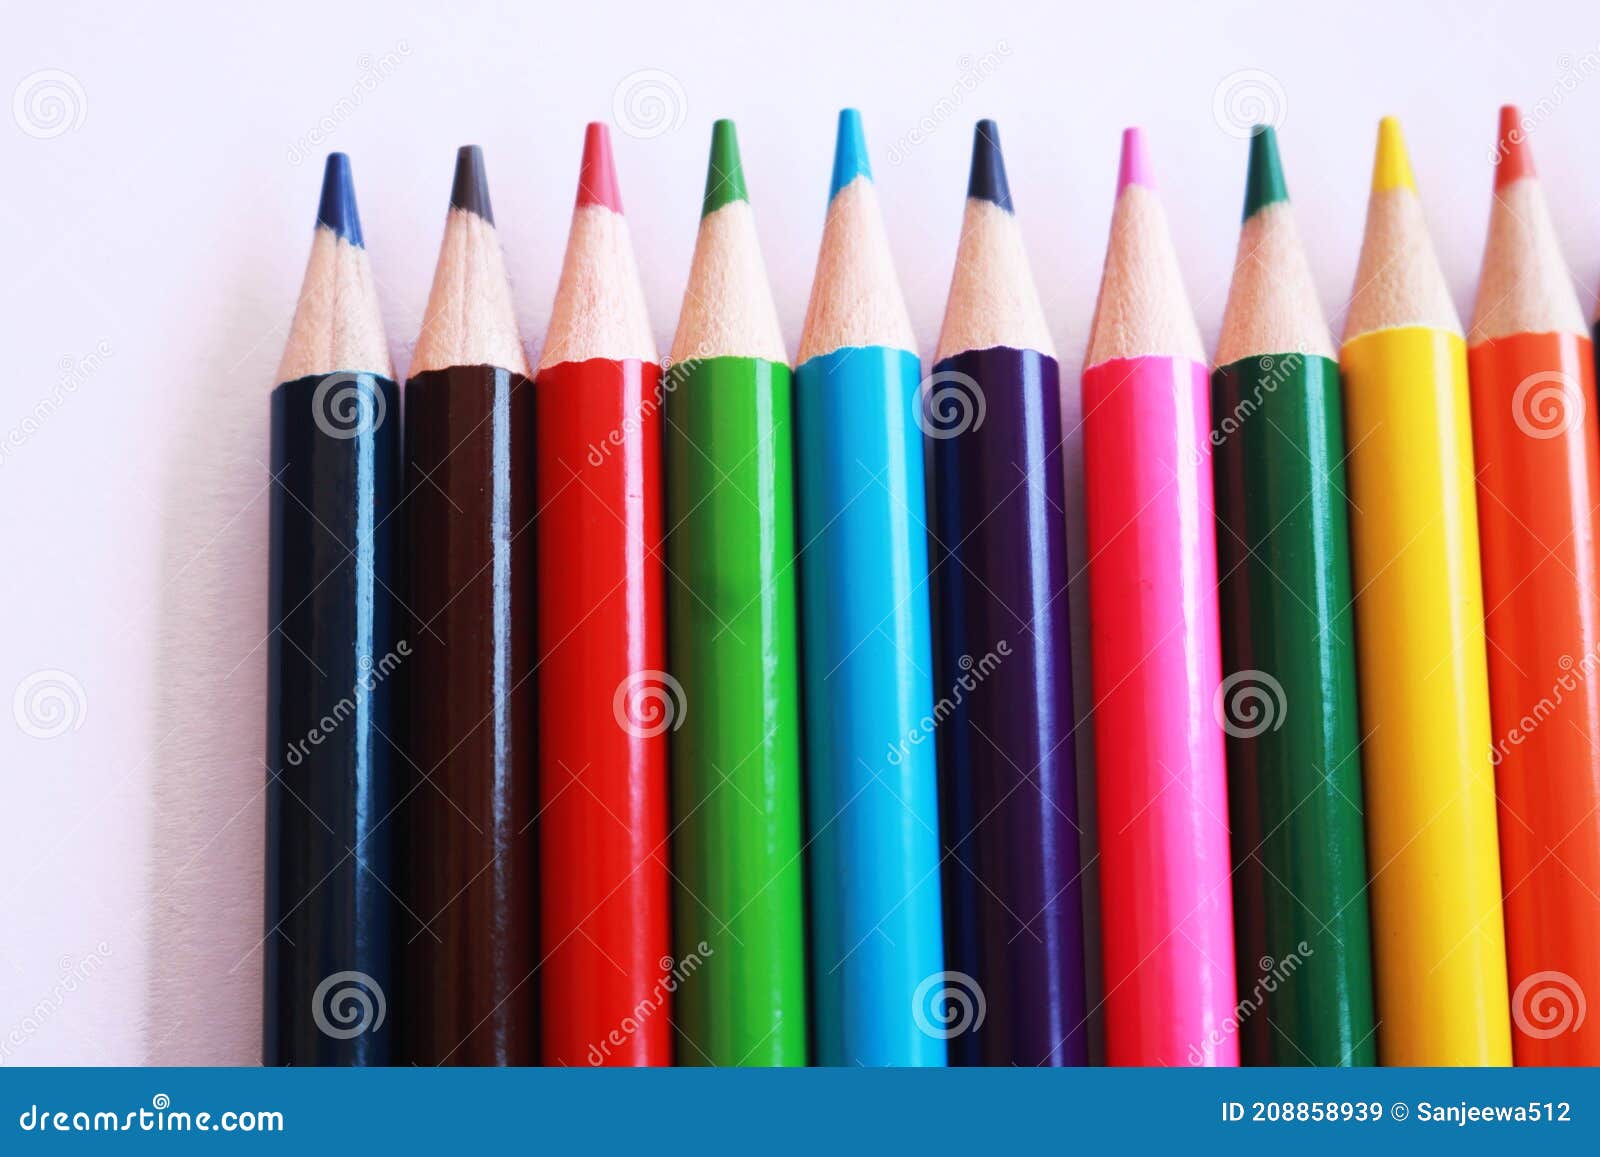 98张彩色铅笔高清大图素材图片下载-泡泡糖办公